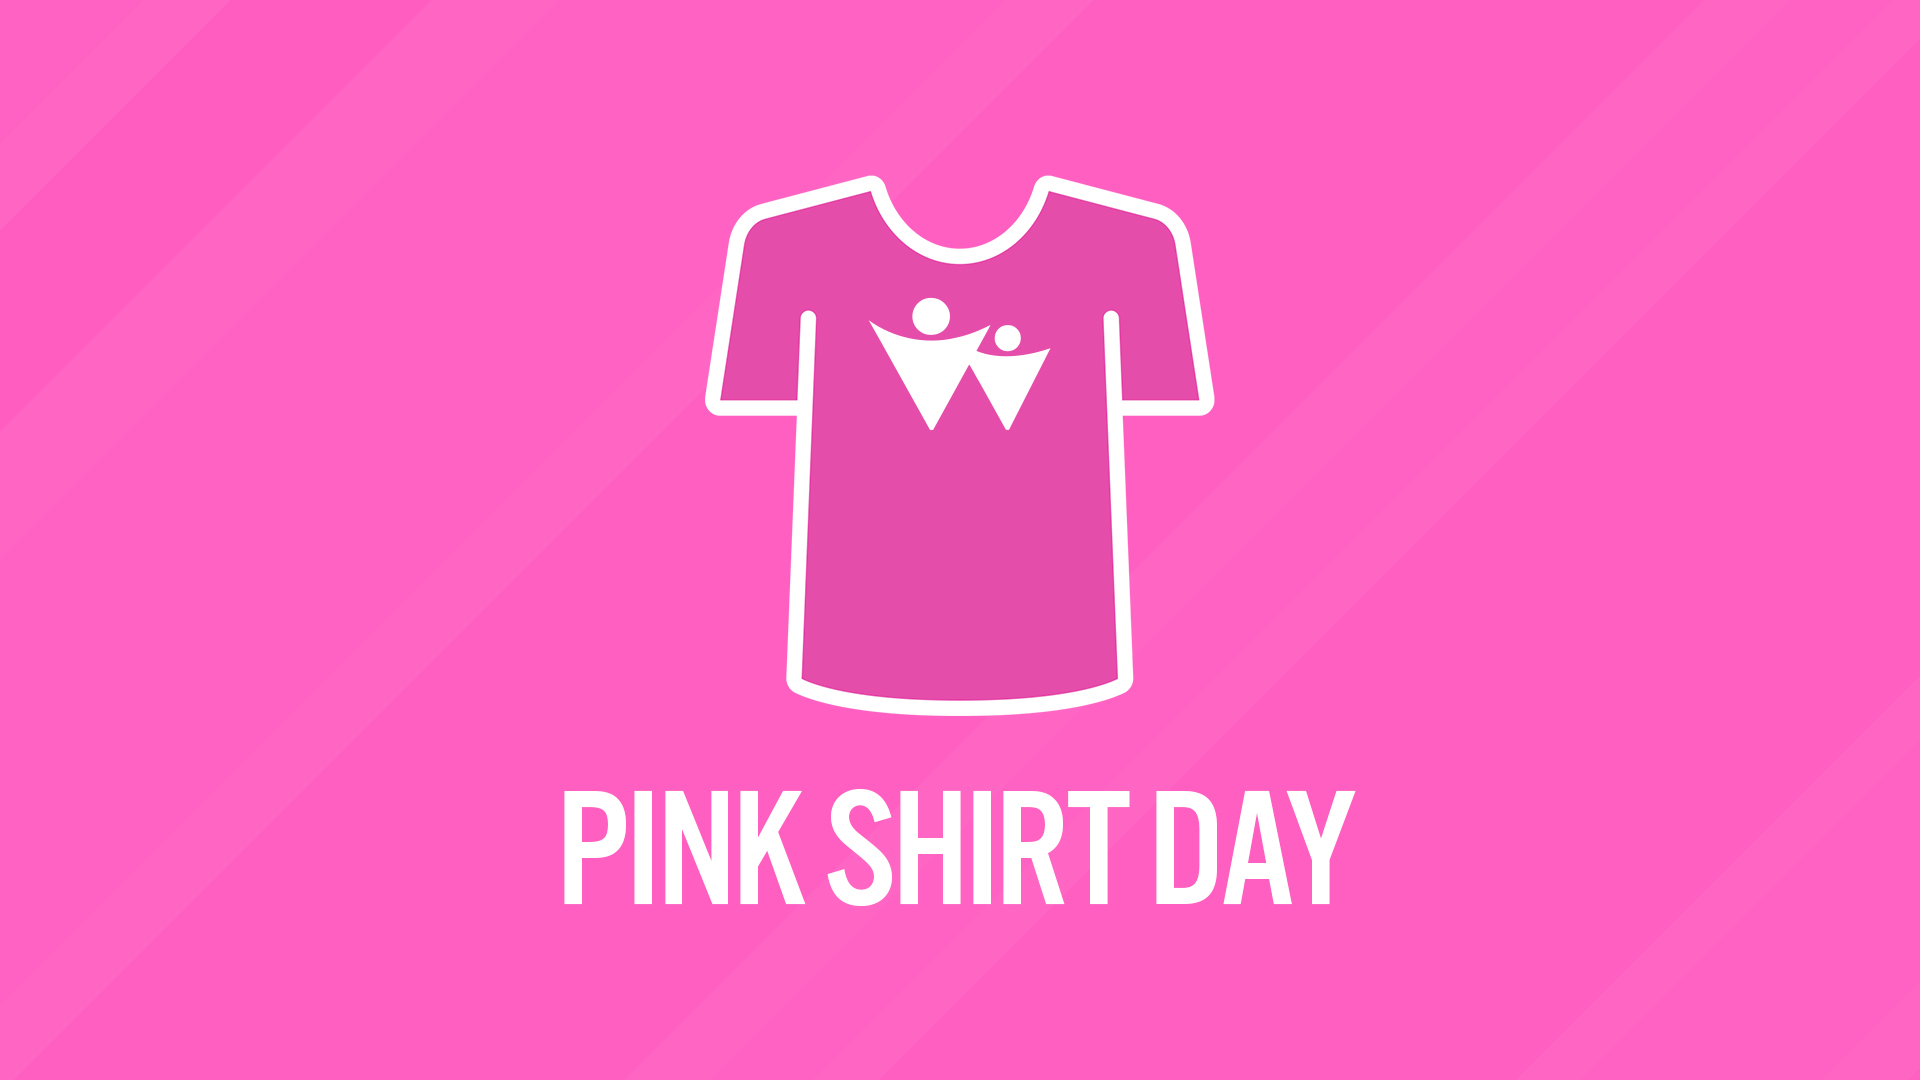 Lifting Each Other Up on Pink Shirt Day - Waterloo Region District... là cơ hội để bạn tìm hiểu thêm về tâm lý học và chăm sóc sức khỏe tinh thần. Hãy cùng chia sẻ và lắng nghe những chia sẻ đầy ý nghĩa của người khác, hỗ trợ nhau trong những khoảnh khắc khó khăn và đề cao ý nghĩa của sự đoàn kết trong cộng đồng.